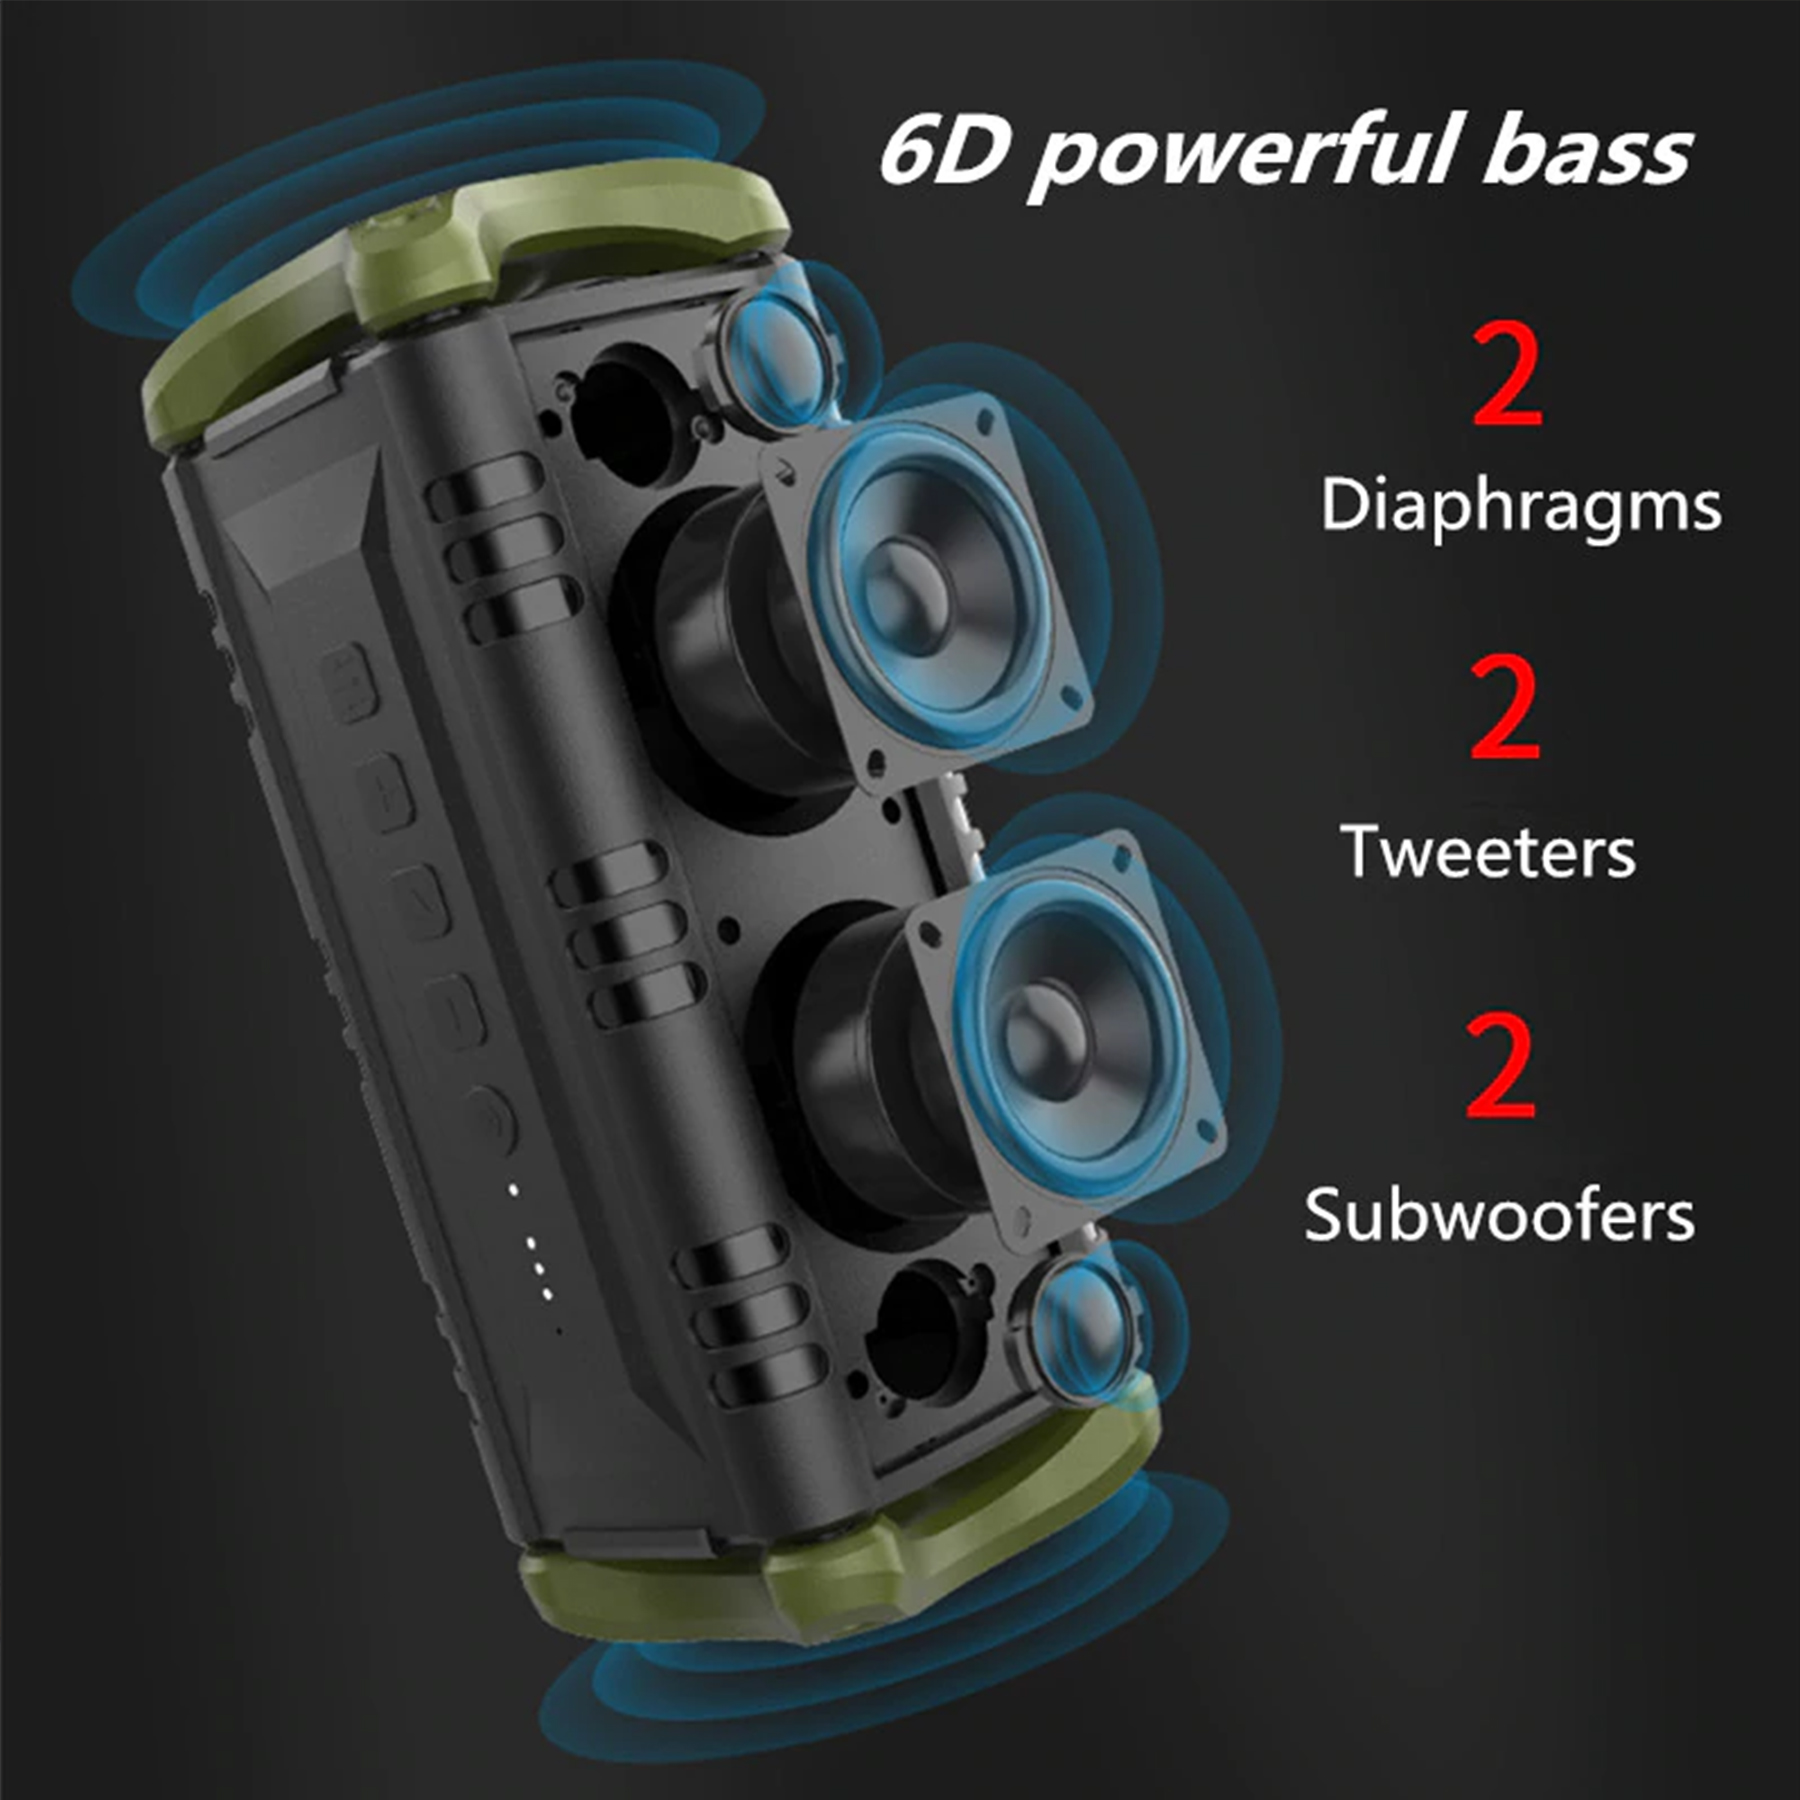 Loa Bluetooth W-King D8 thiết kế mạnh mẽ, âm thanh đỉnh cao cho phái mạnh